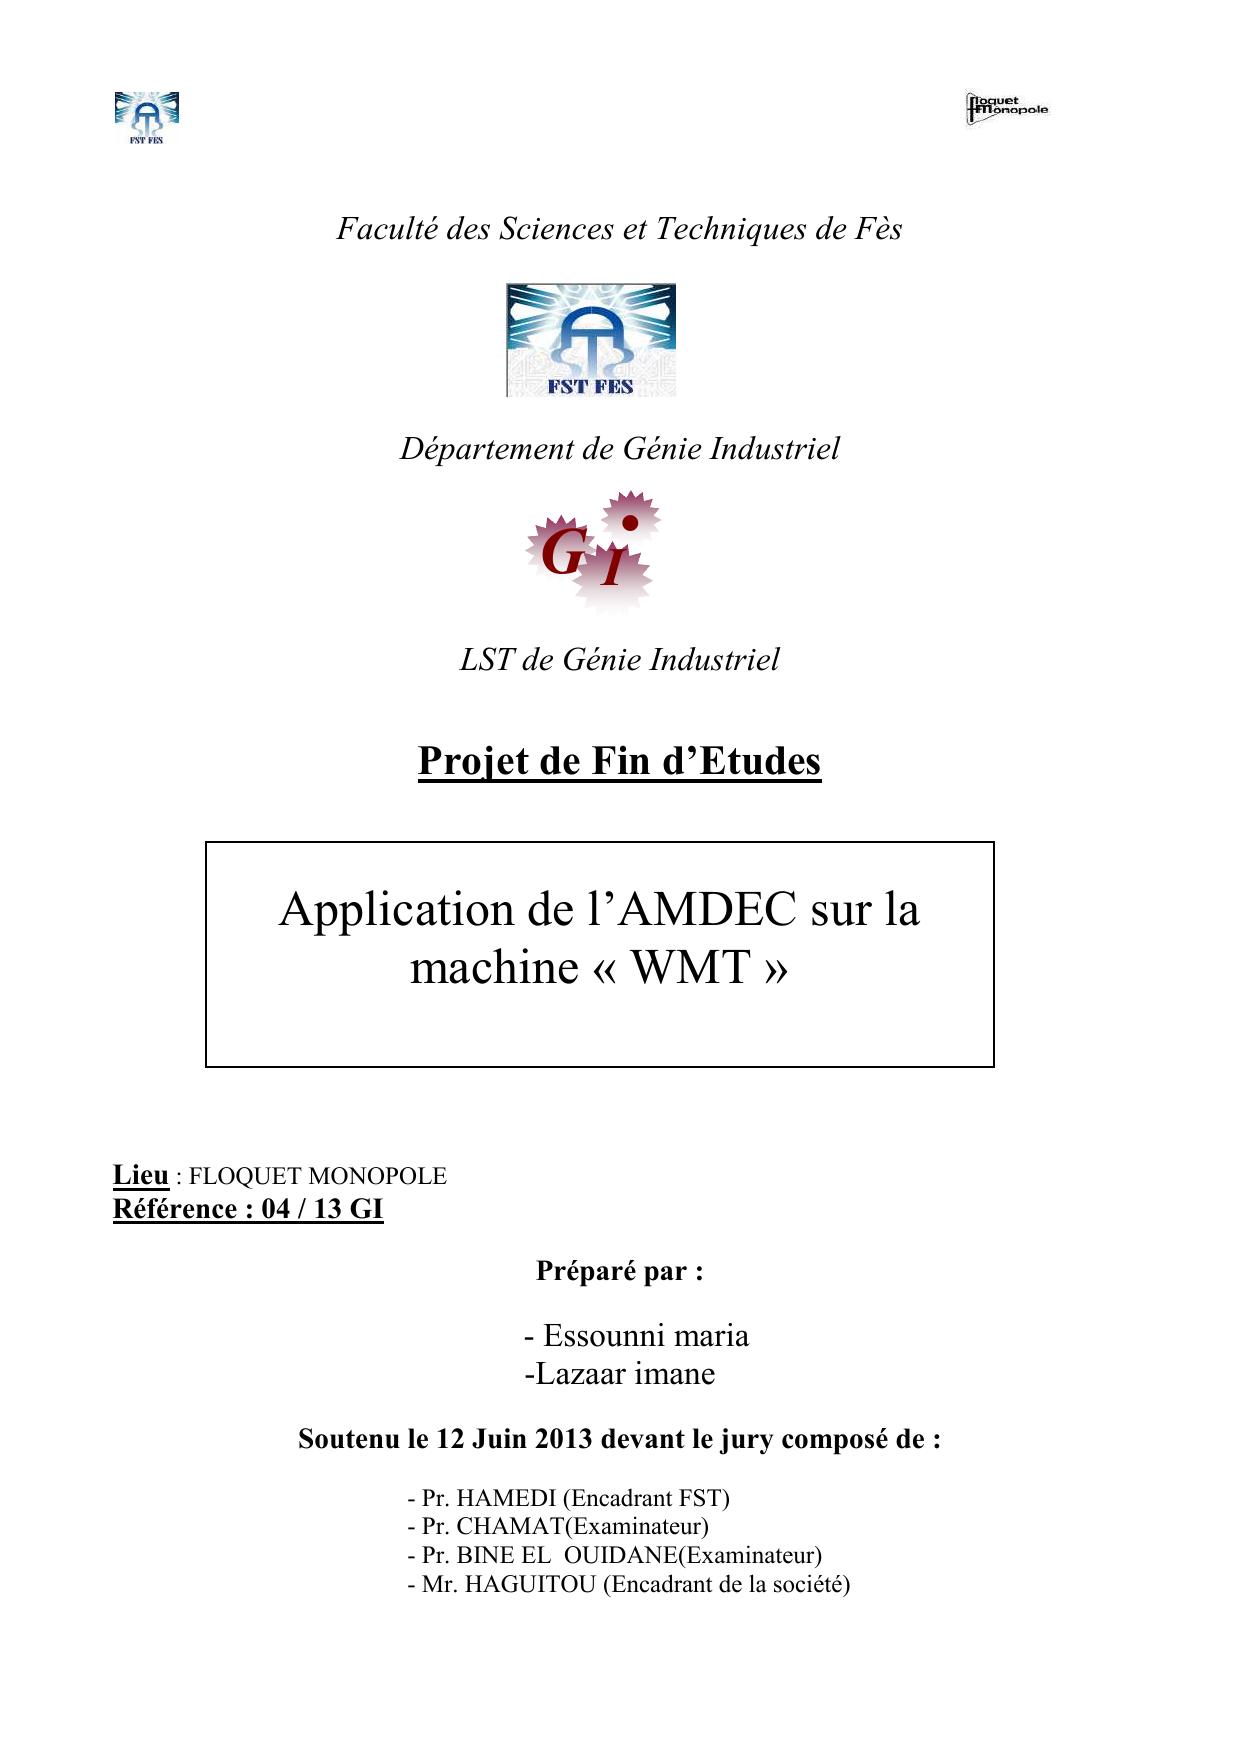 Application de l’AMDEC sur la machine « WMT »